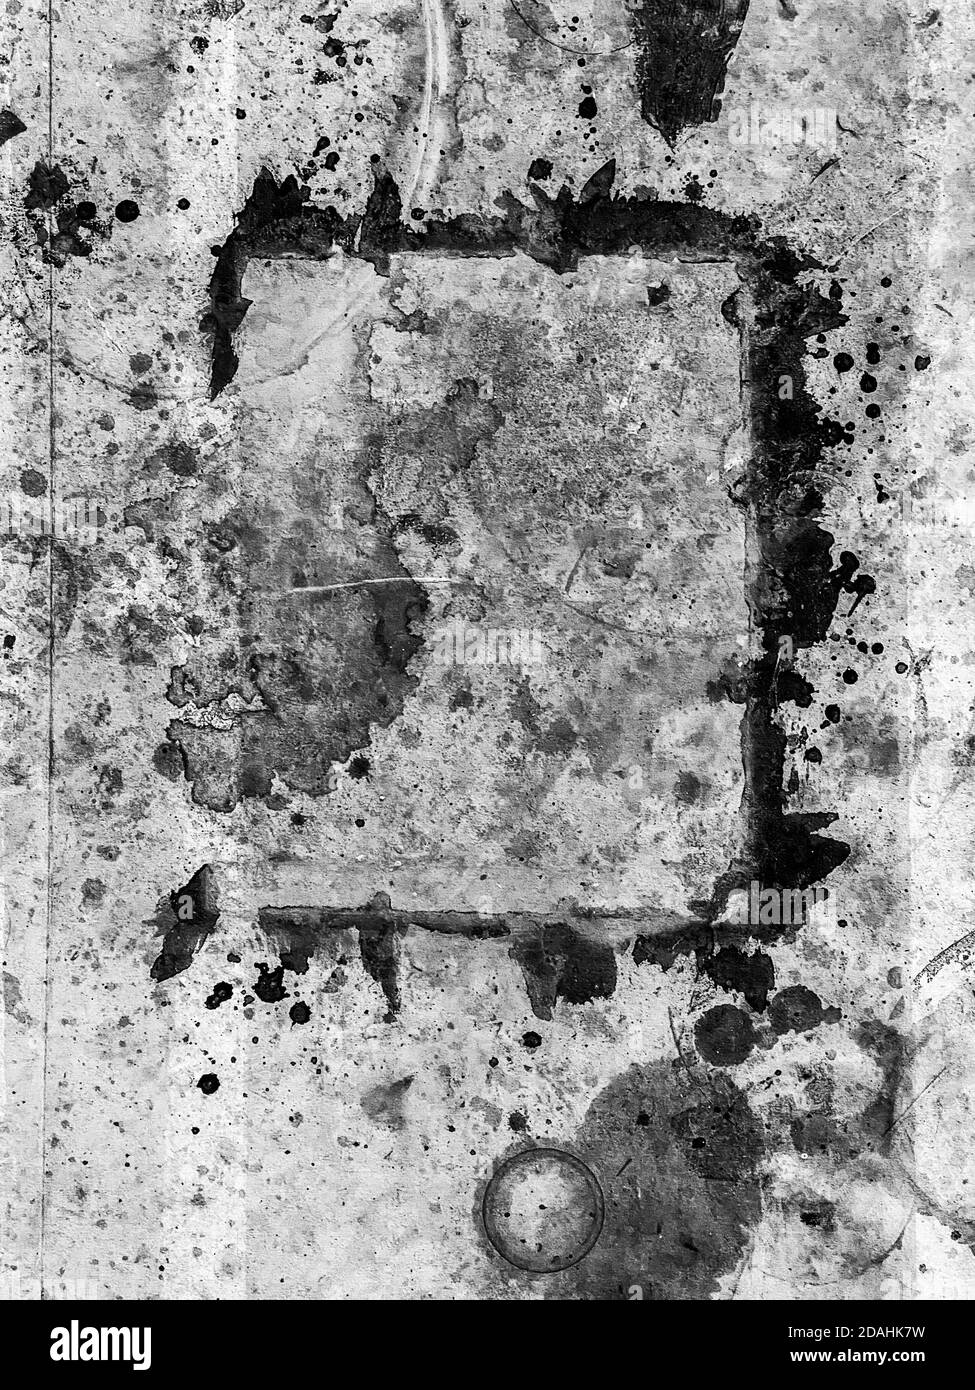 Arrière-plan texturé peint en noir et blanc sur du papier sale dans un studio d'artiste Banque D'Images